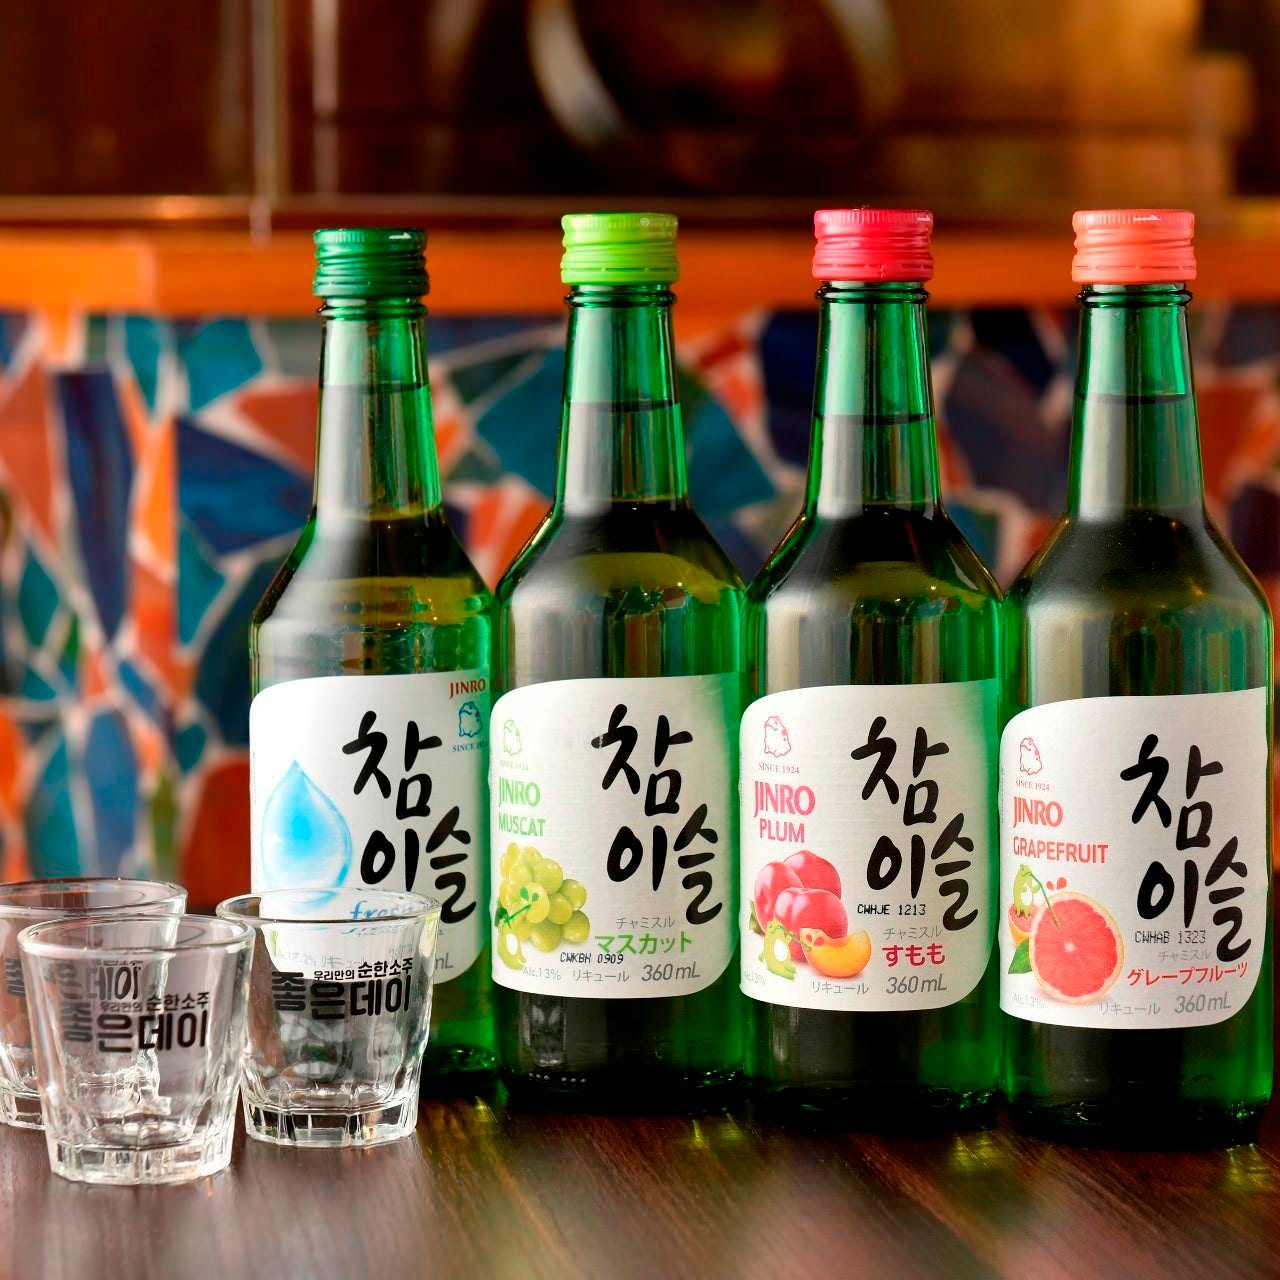 本場の料理を引き立てる韓国酒が多彩